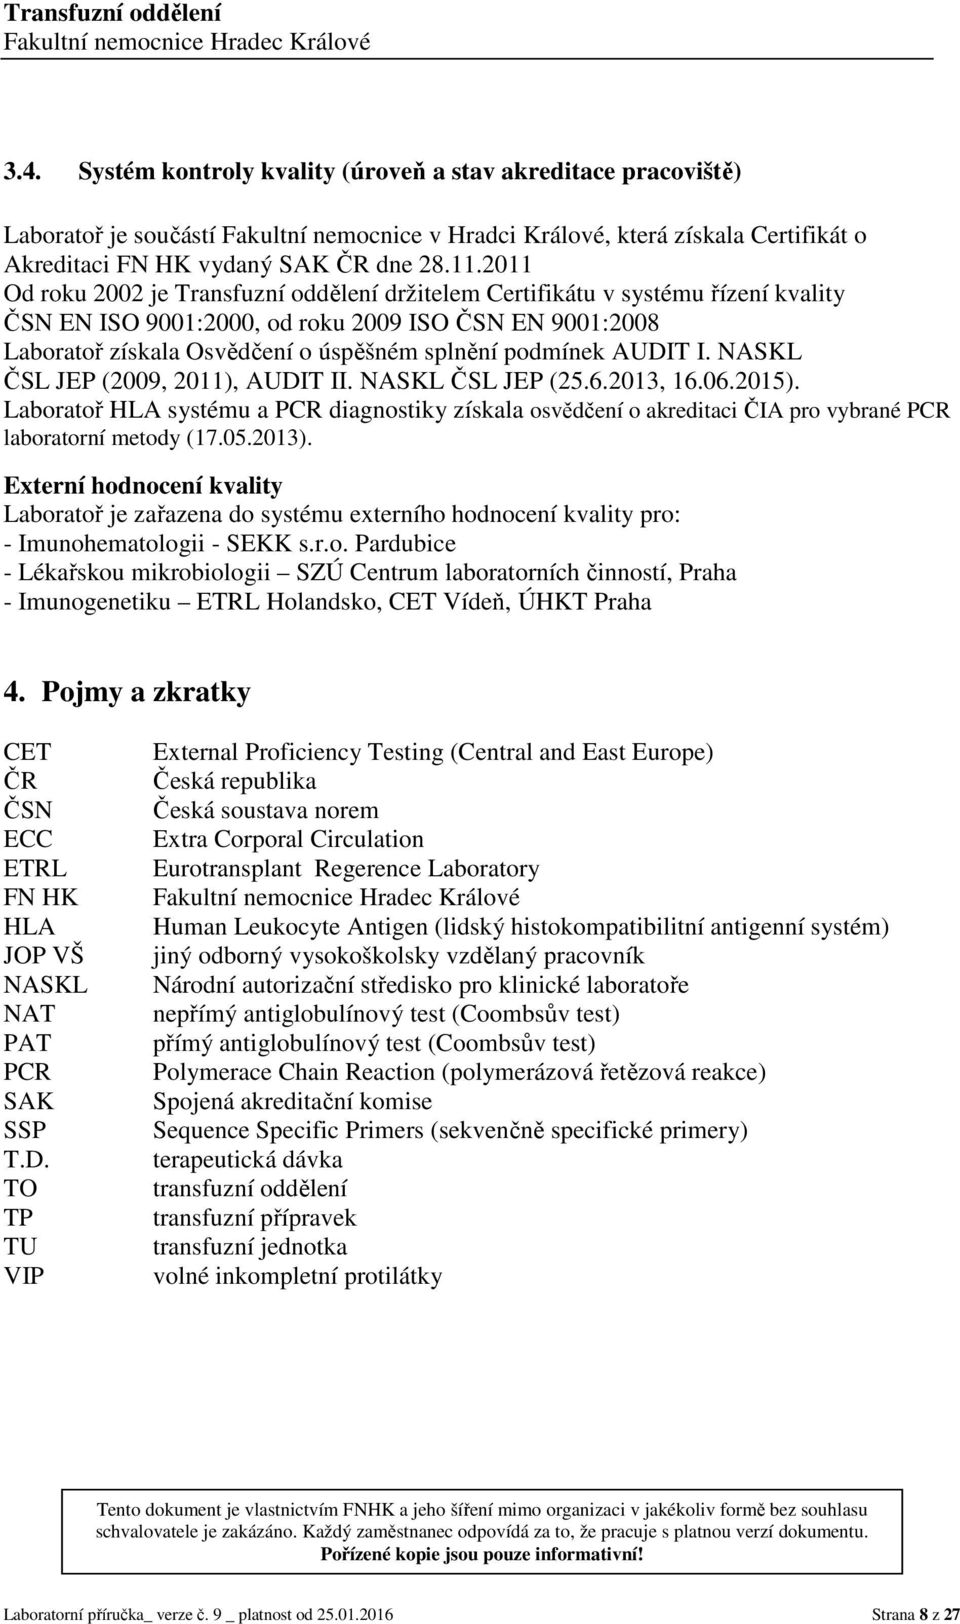 AUDIT I. NASKL ČSL JEP (2009, 2011), AUDIT II. NASKL ČSL JEP (25.6.2013, 16.06.2015). Laboratoř HLA systému a PCR diagnostiky získala osvědčení o akreditaci ČIA pro vybrané PCR laboratorní metody (17.